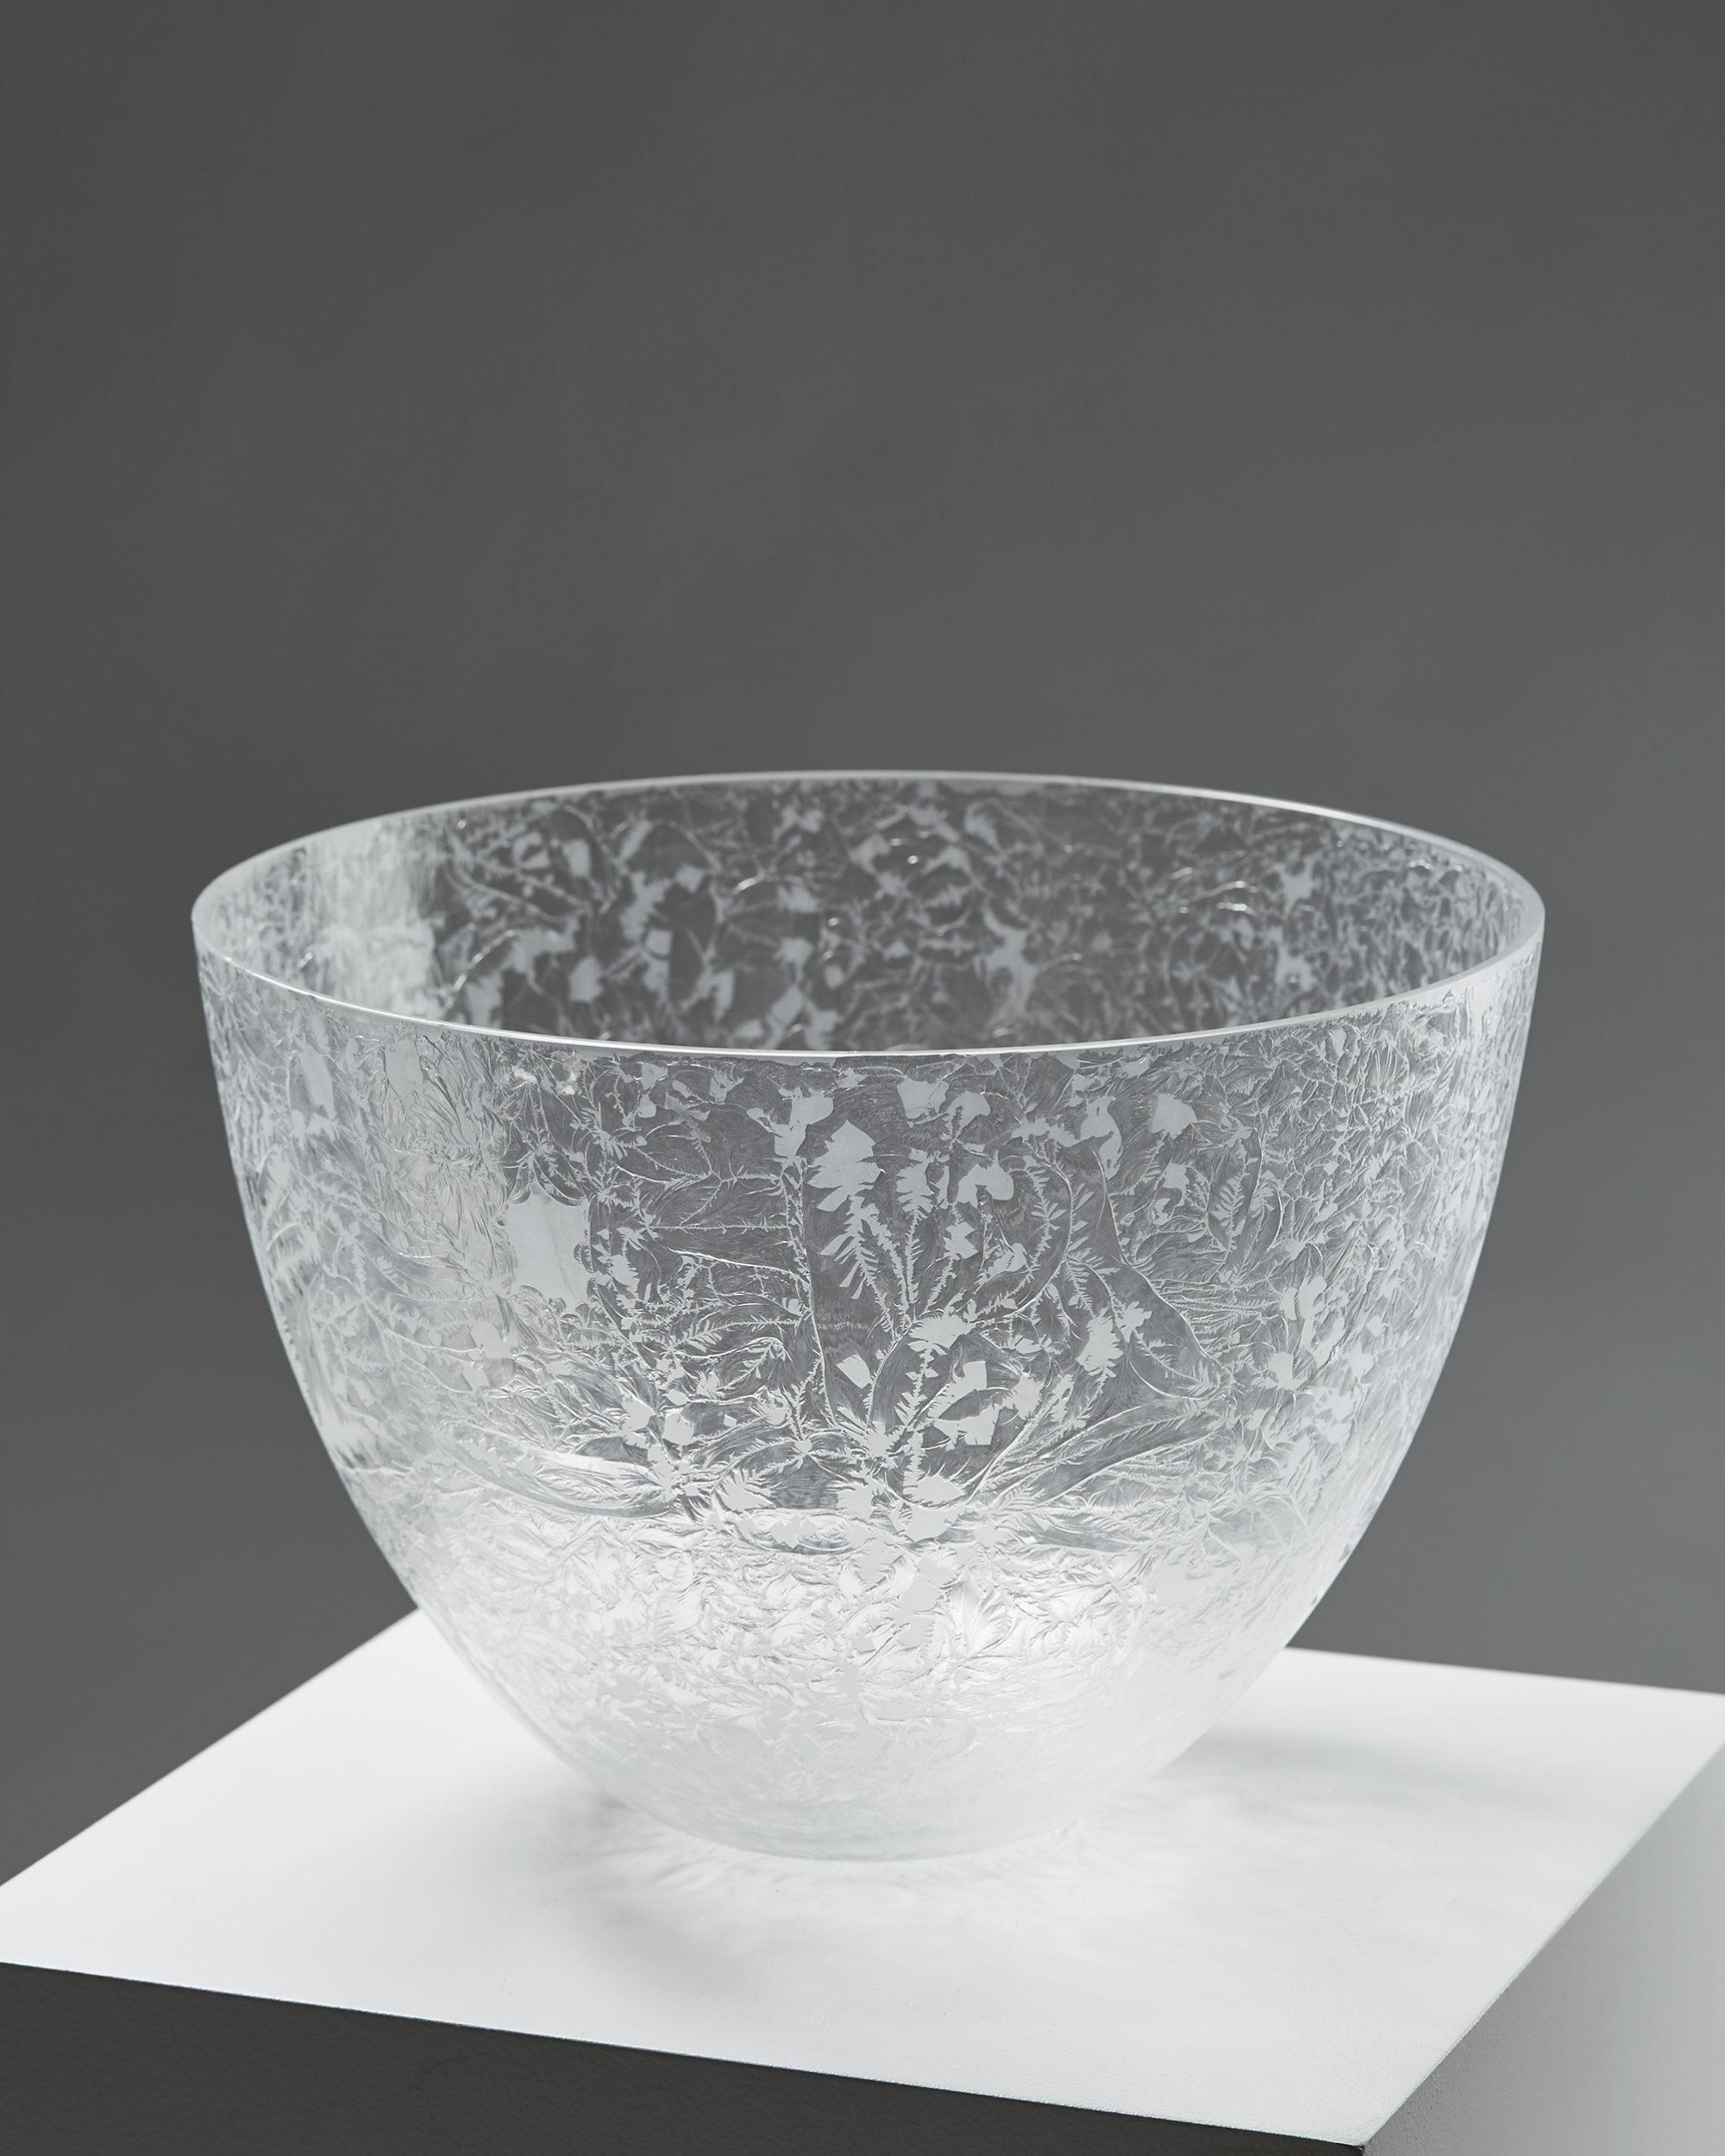 Bowl designed by Ingegerd Råman for Orrefors,
Sweden. 2000's.

Glass.

Dimensions:
H: 24 cm/ 9 1/2''
D: 34.5 cm/ 1' 2''